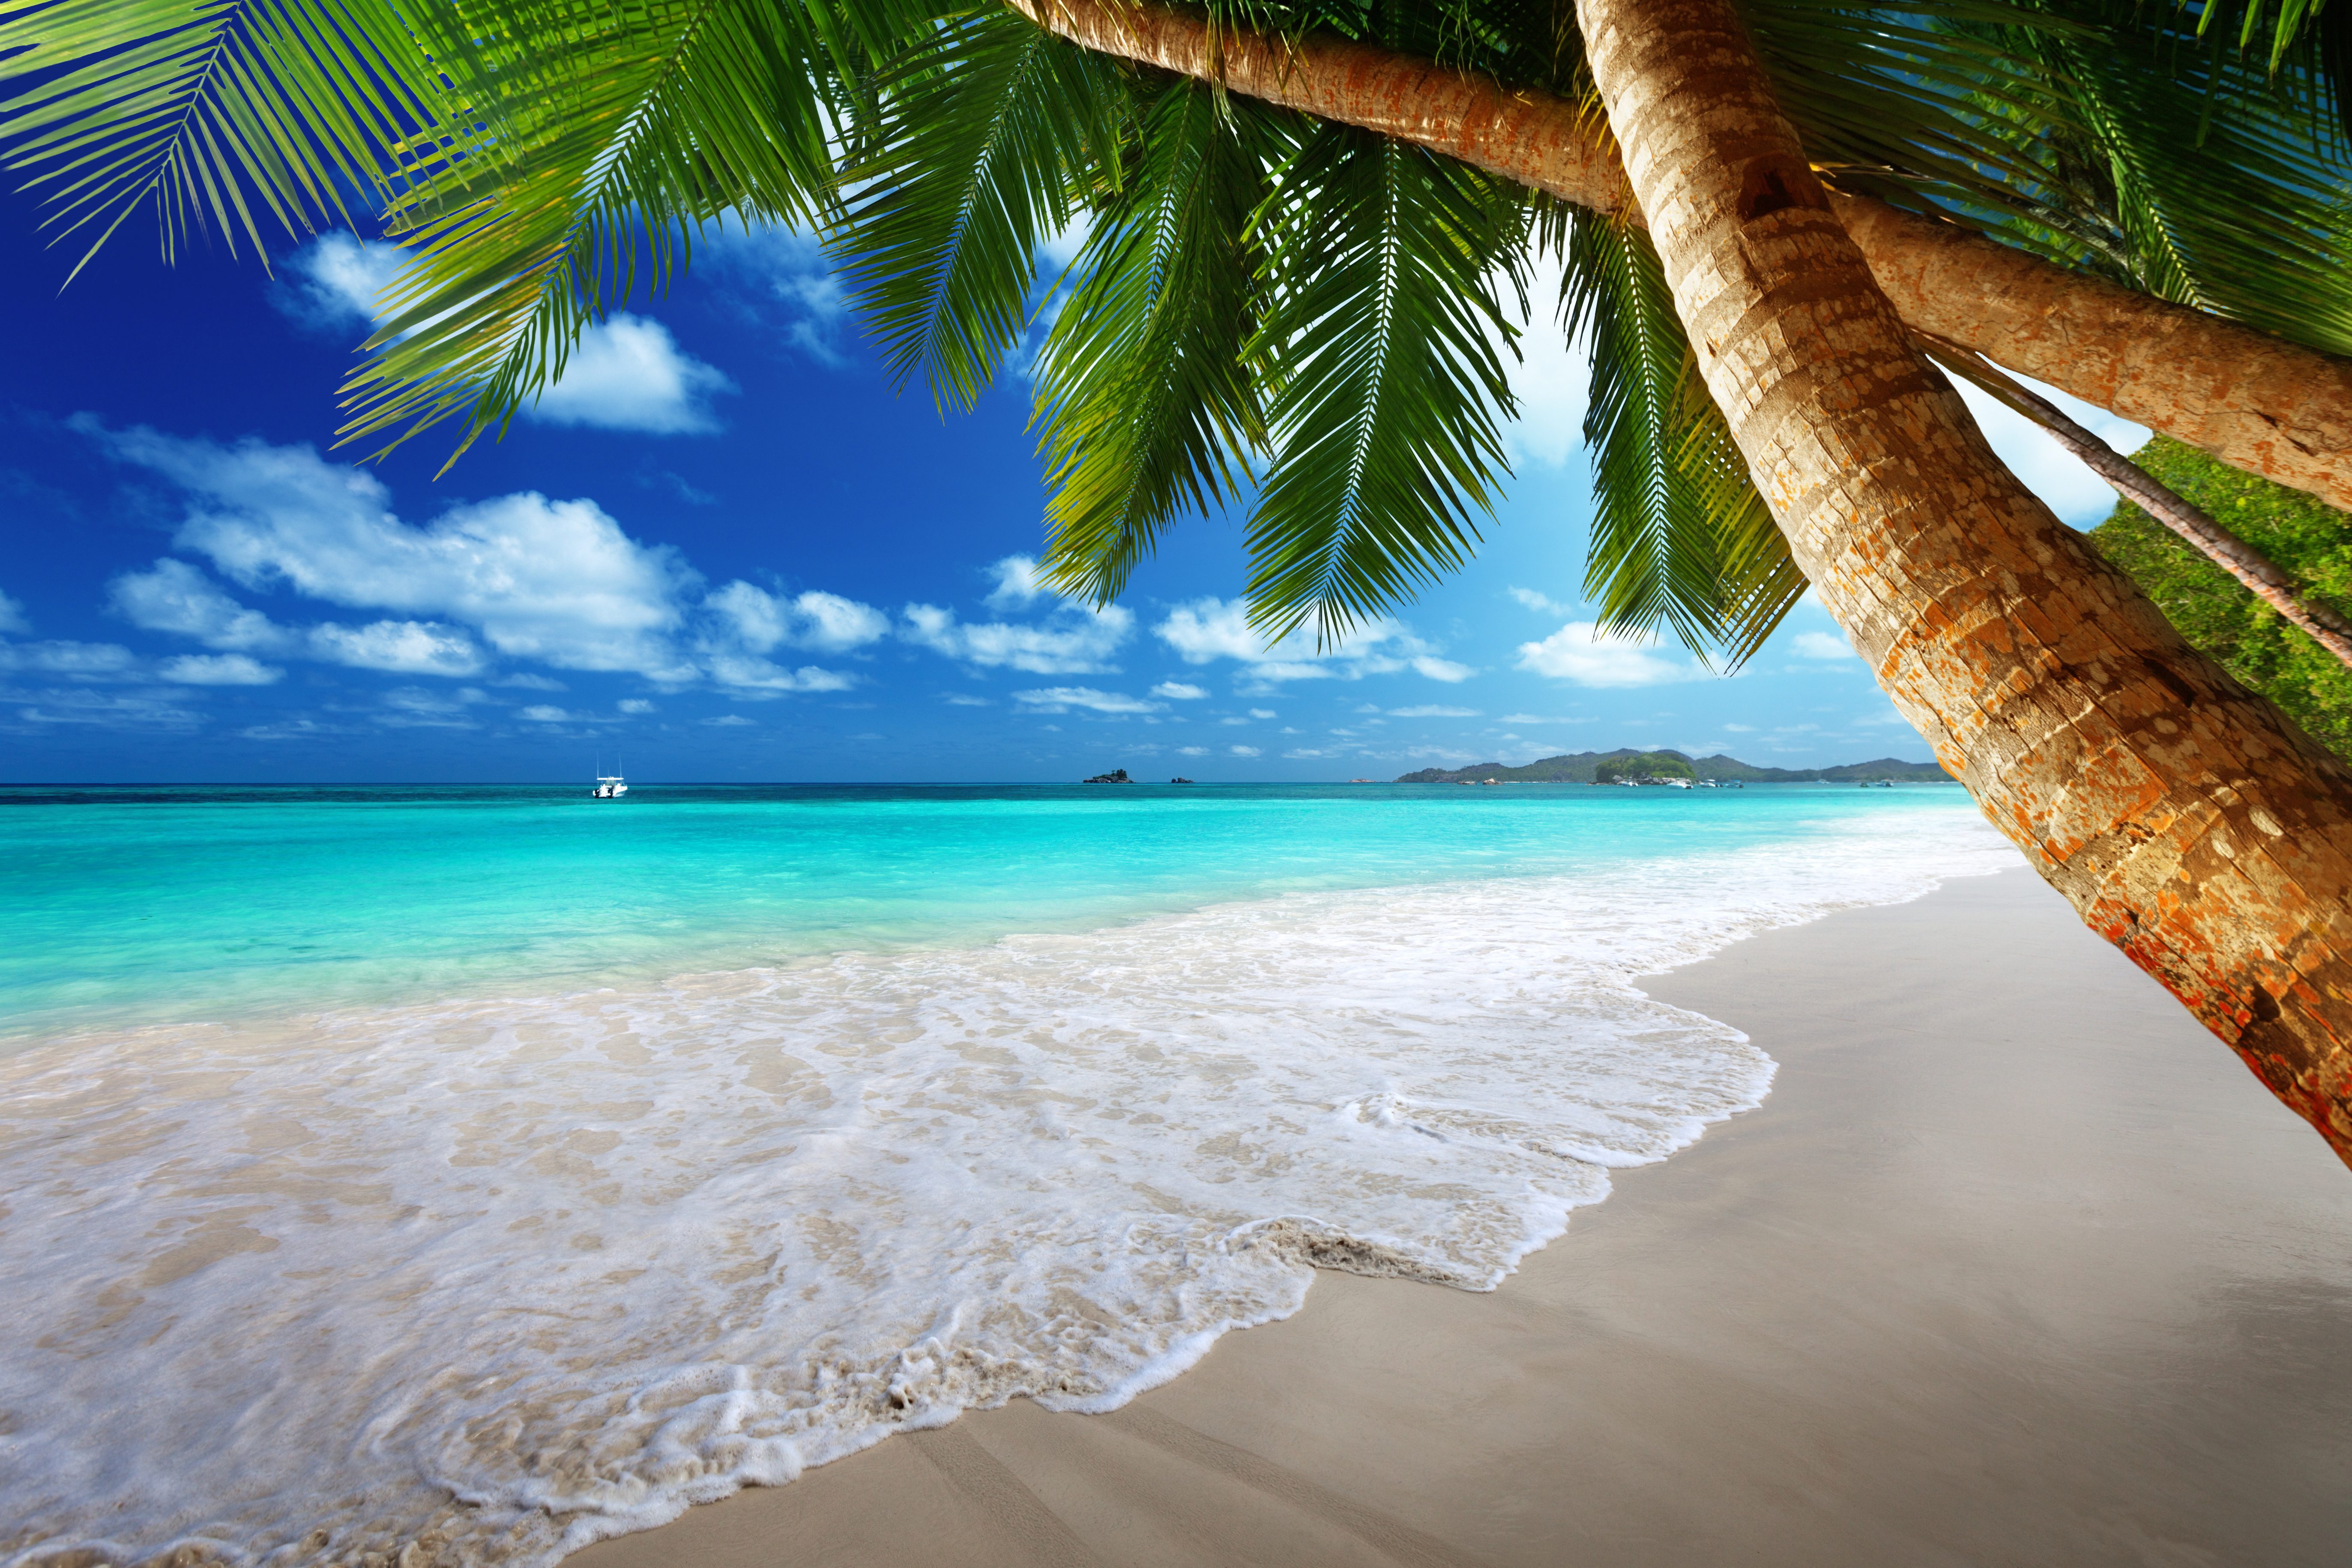 Обои на комп. Парадиз остров Карибского моря. Карибское море пляж Баунти. Море пляж. Райский пляж.